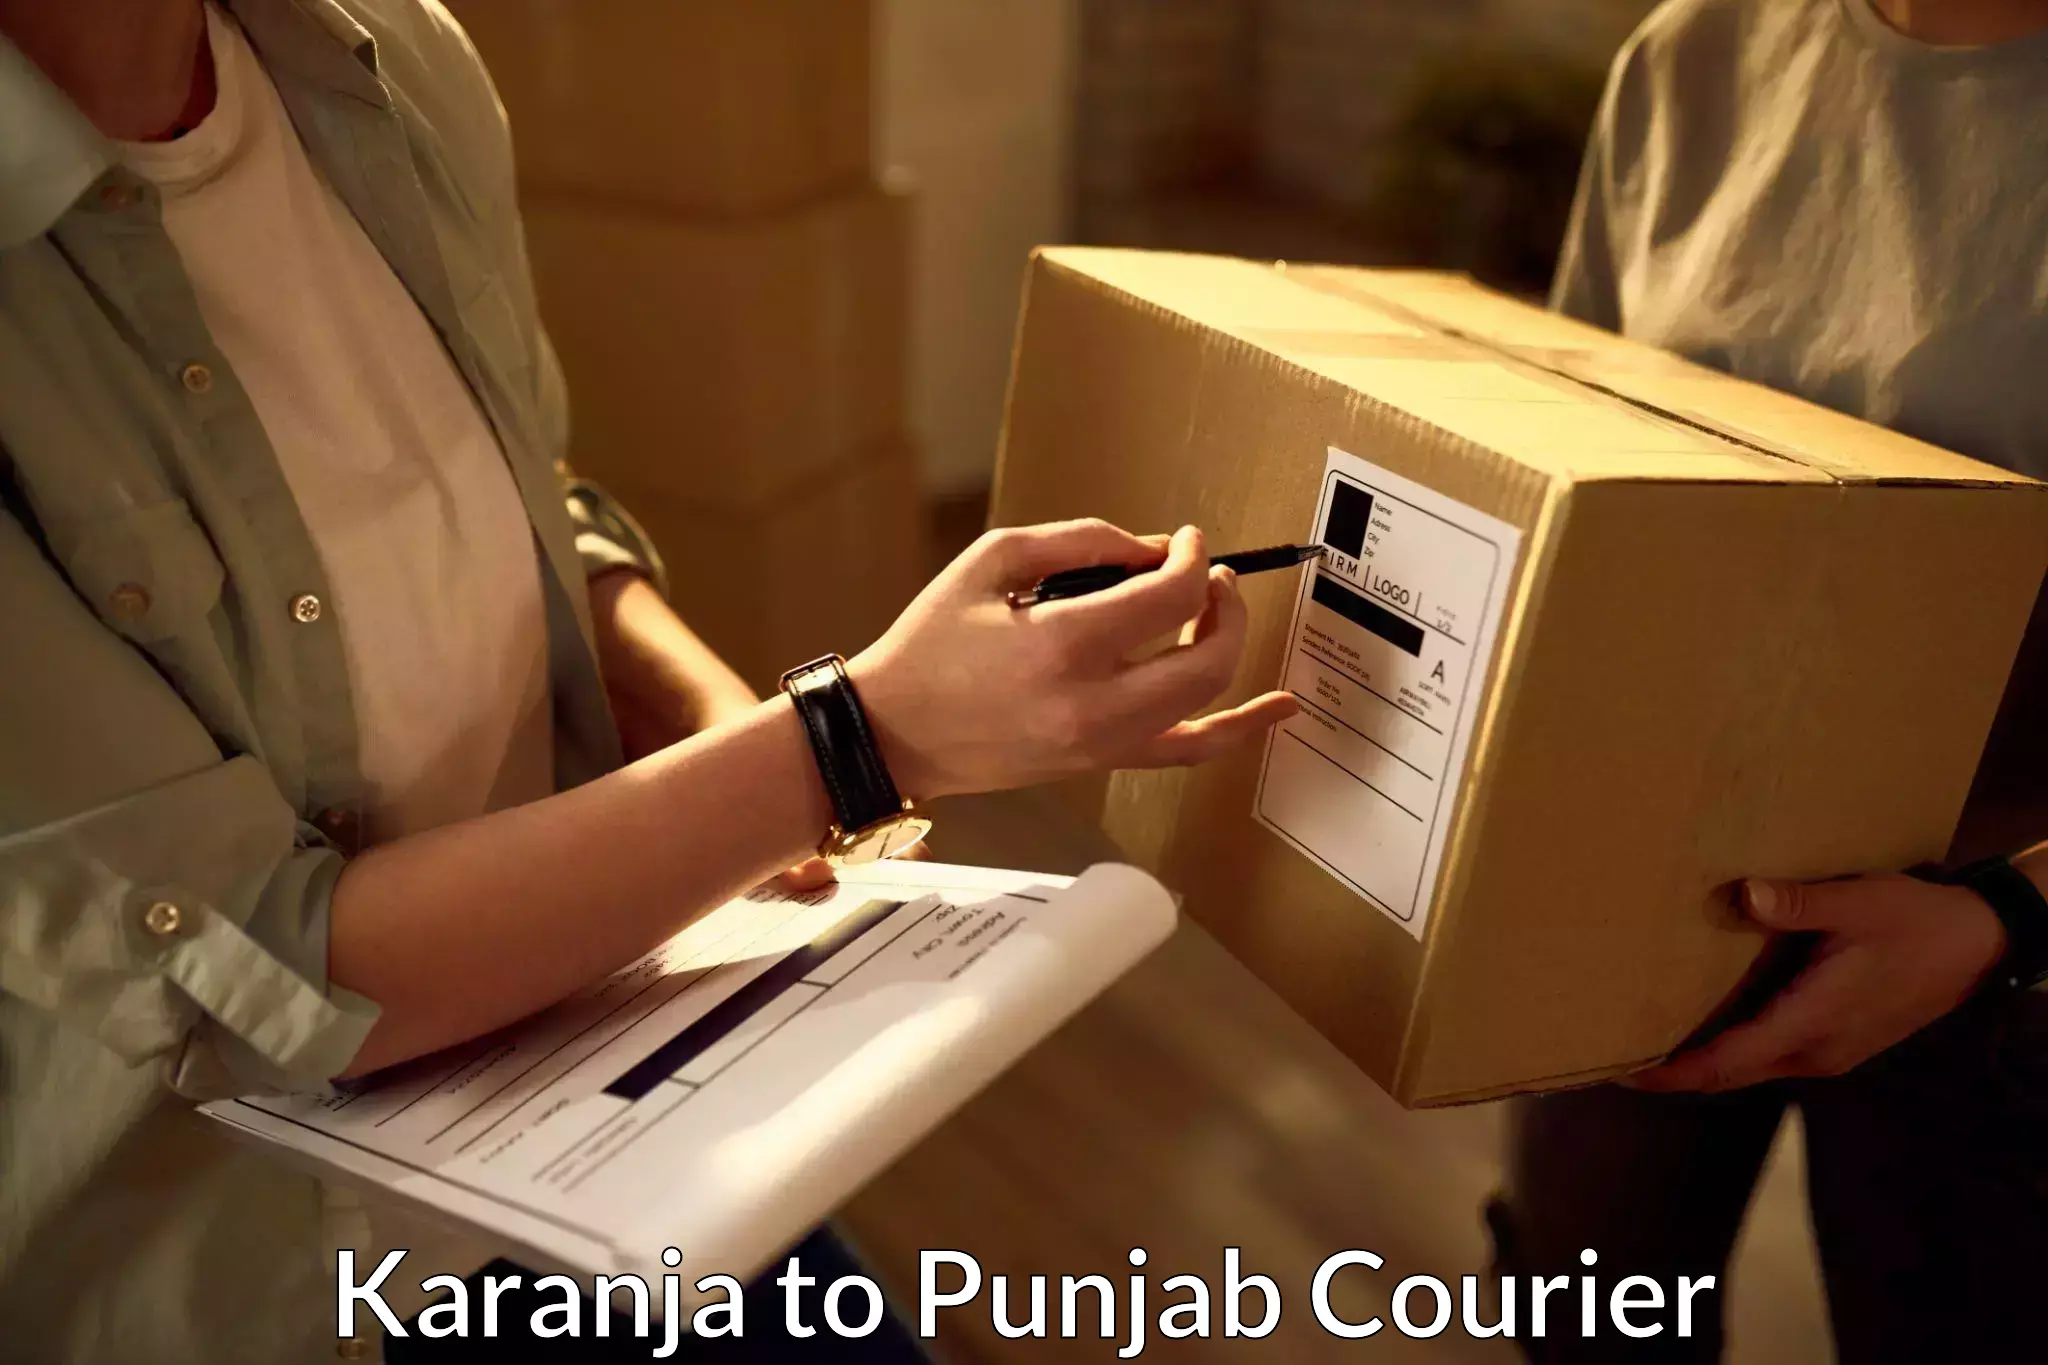 24/7 courier service Karanja to Sri Hargobindpur